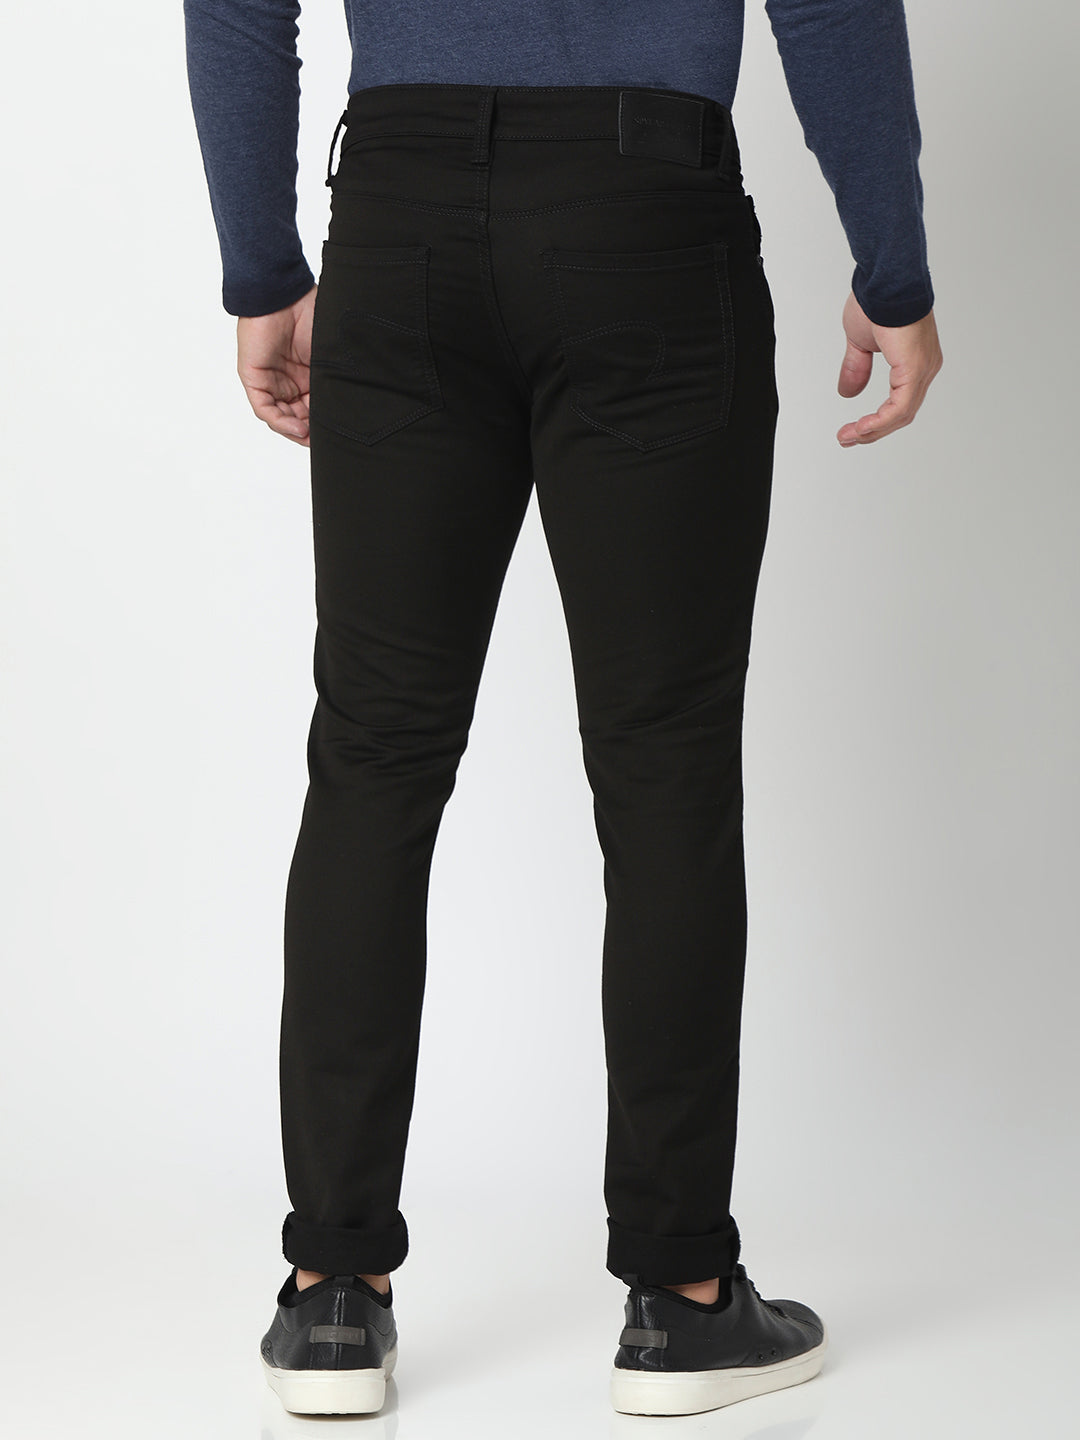 Spykar Black Cotton Super Slim Fit Tapered Length Jeans For Men